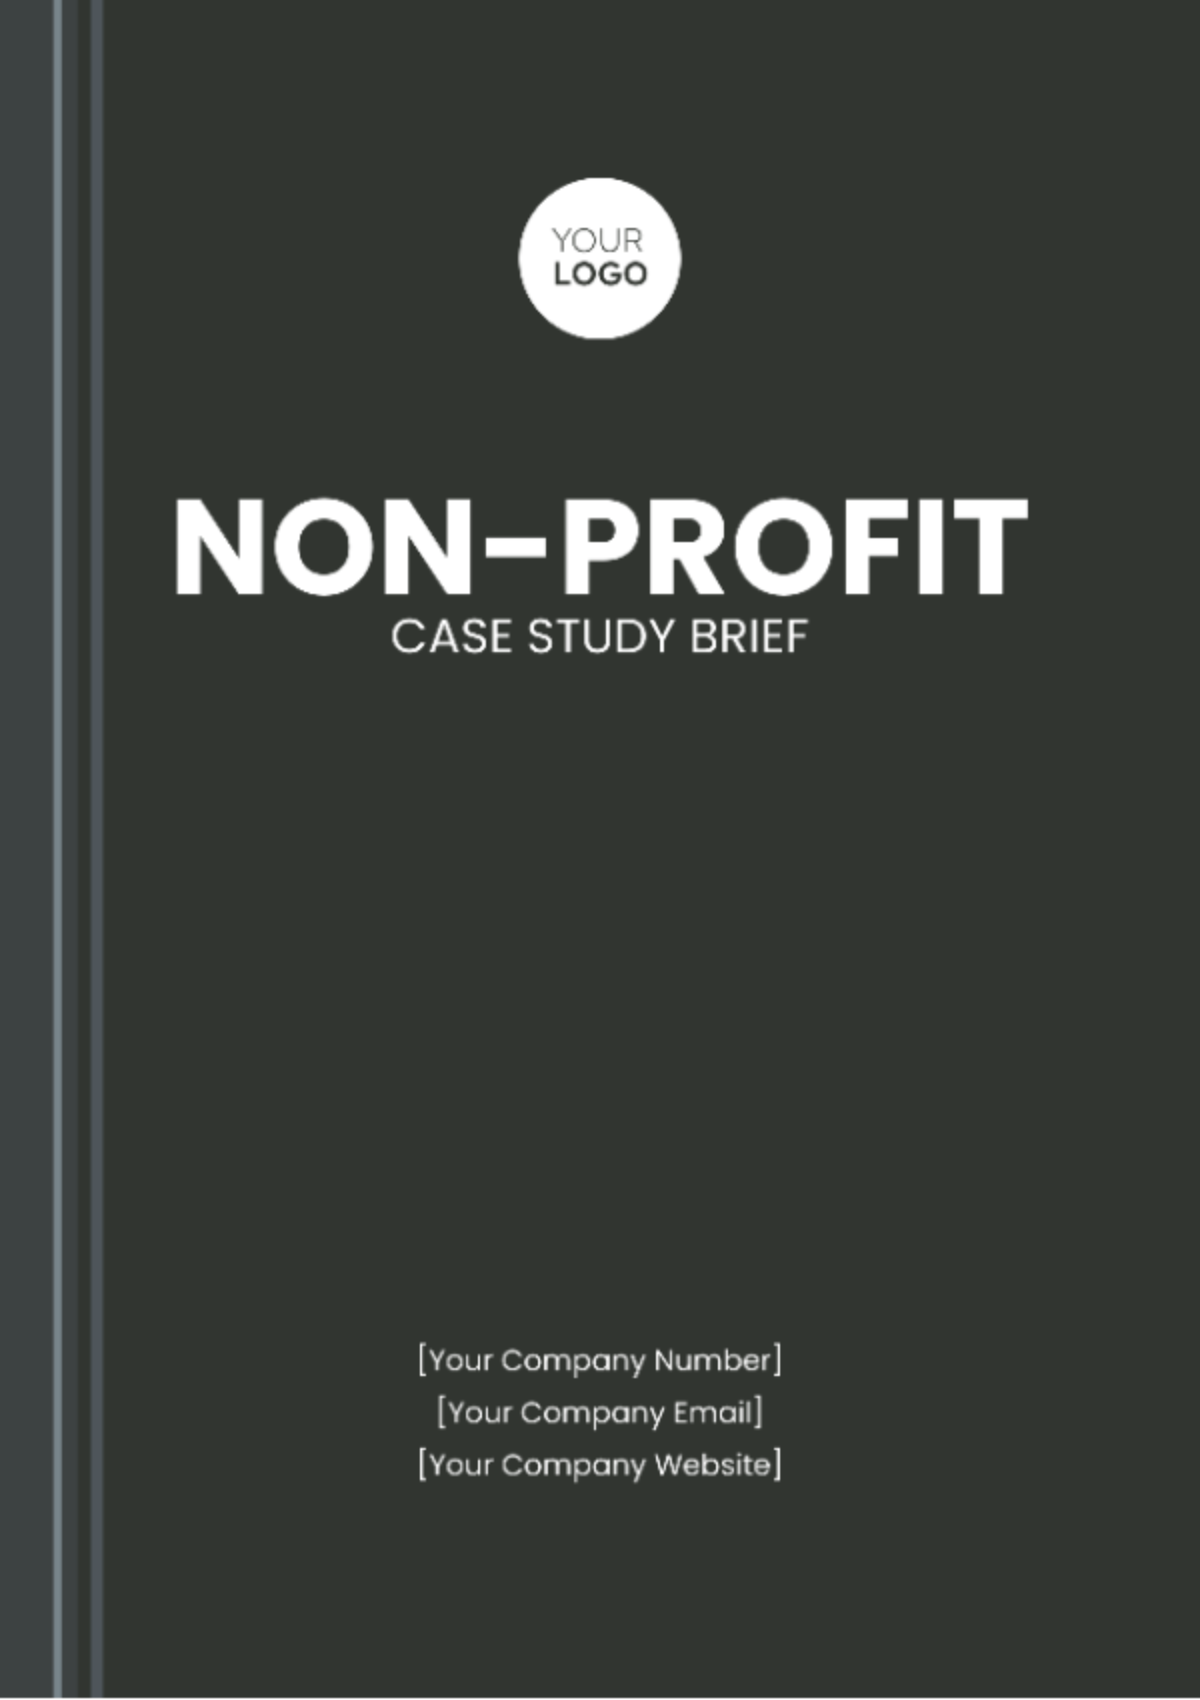 Non-Profit Case Study Brief Template